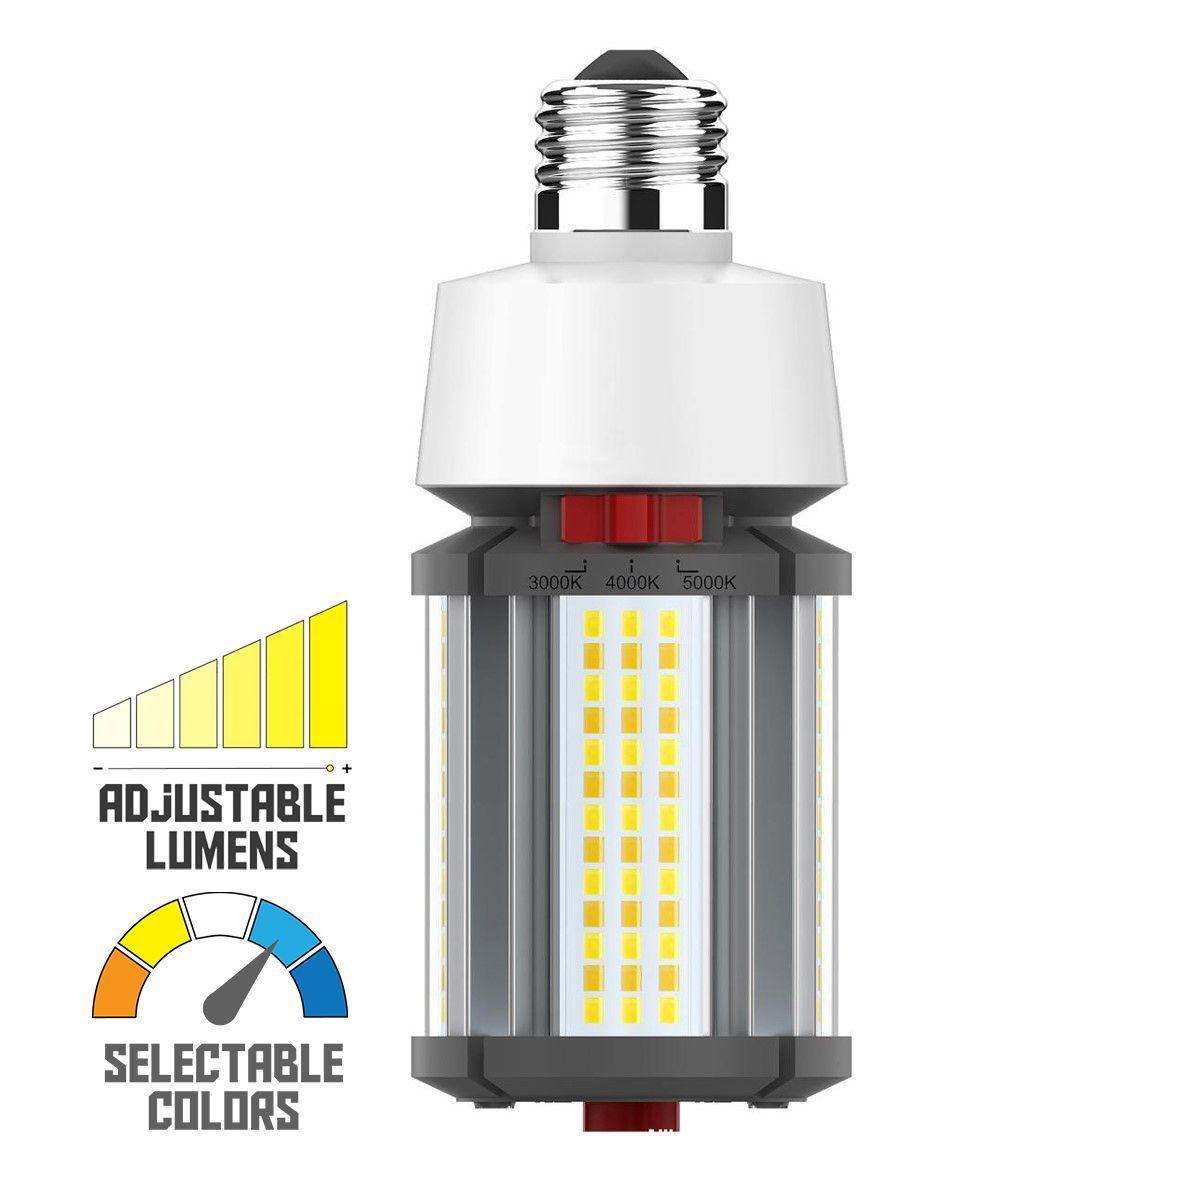 Hi-Pro Retrofit LED Corn Bulb, 18W, 2520 Lumens, Selectable CCT, 30K/40K/50K, E26 Base, 120-277V - Bees Lighting